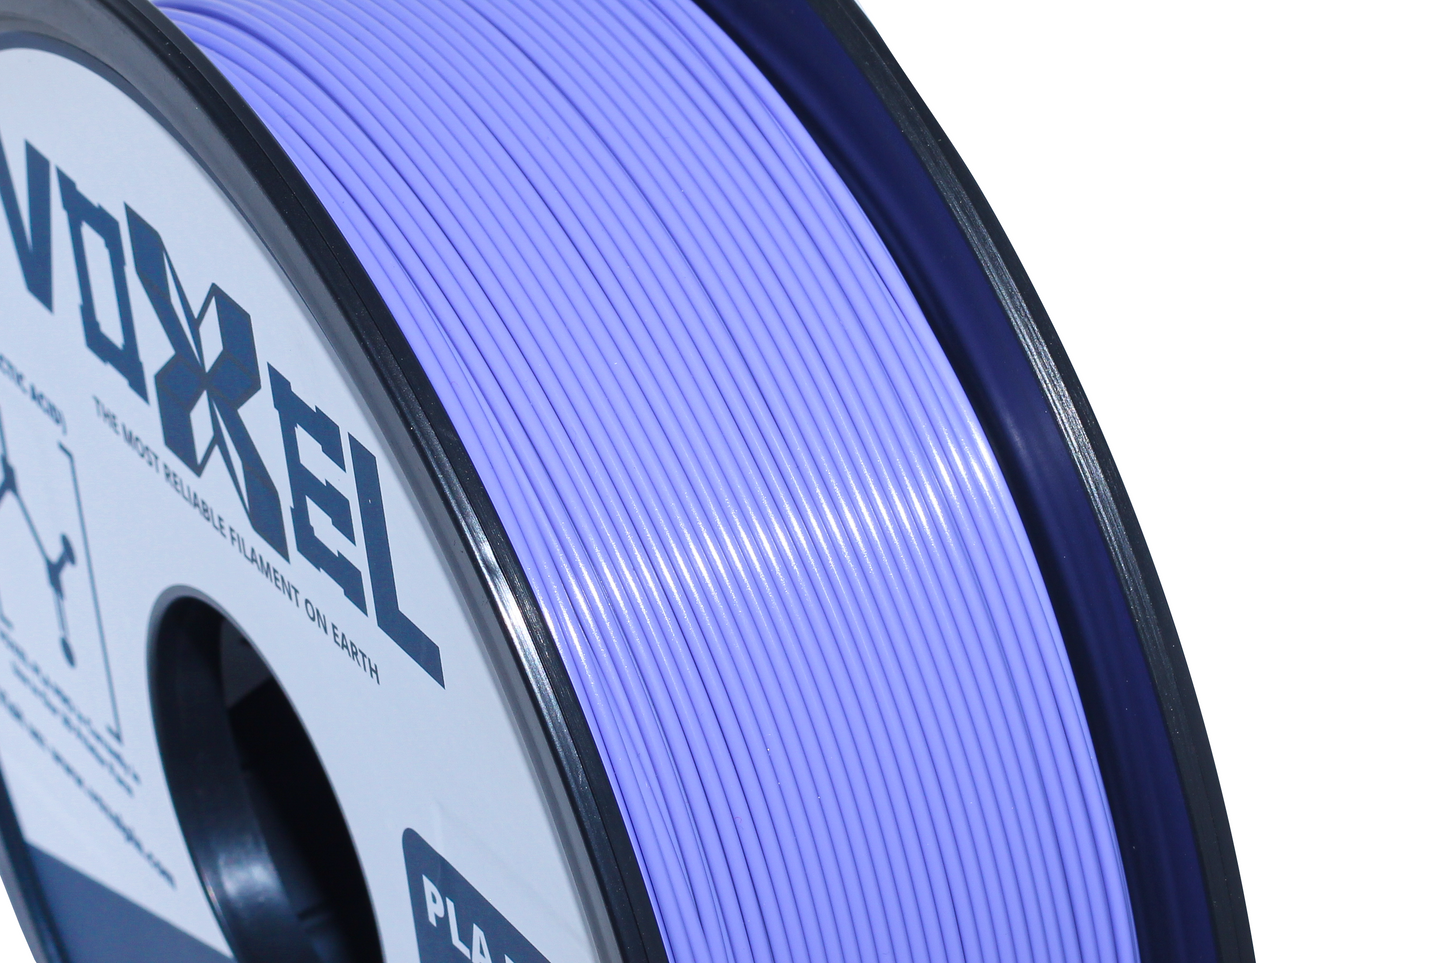 VOXELPLA PLA Plus (Pro) Lavender Purple 1.75mm Filament (1kg)